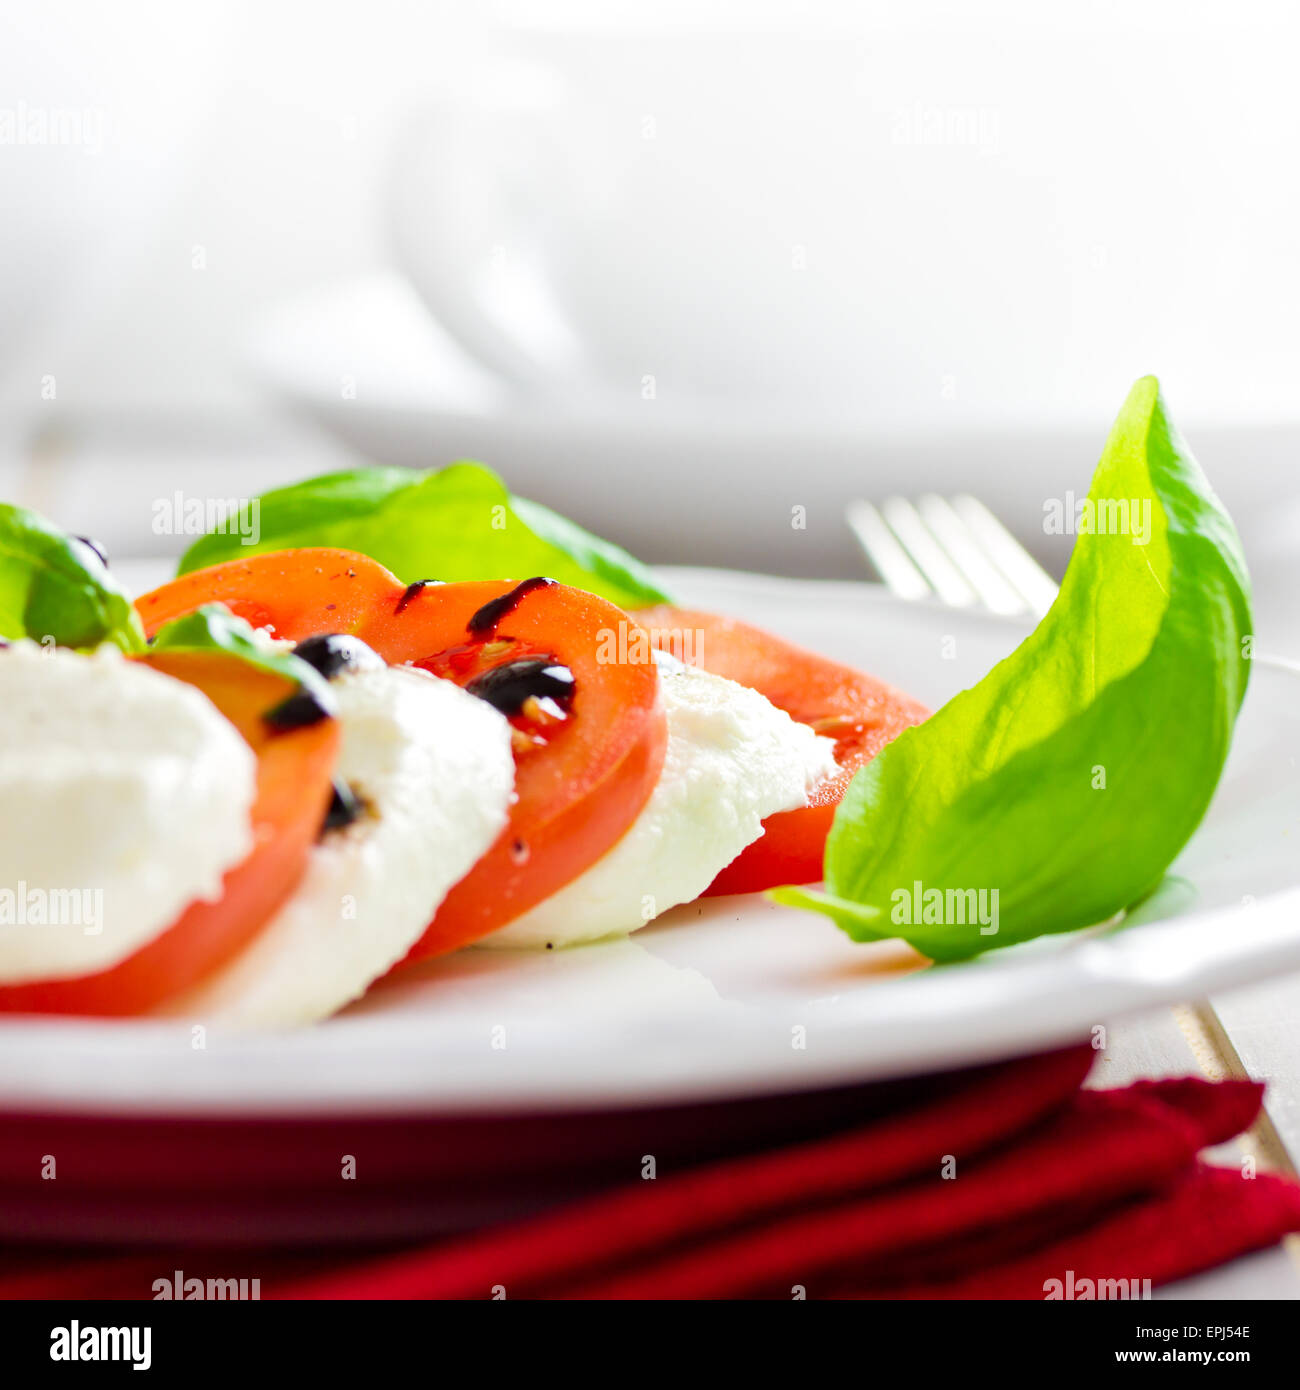 tomato mozzarella Stock Photo